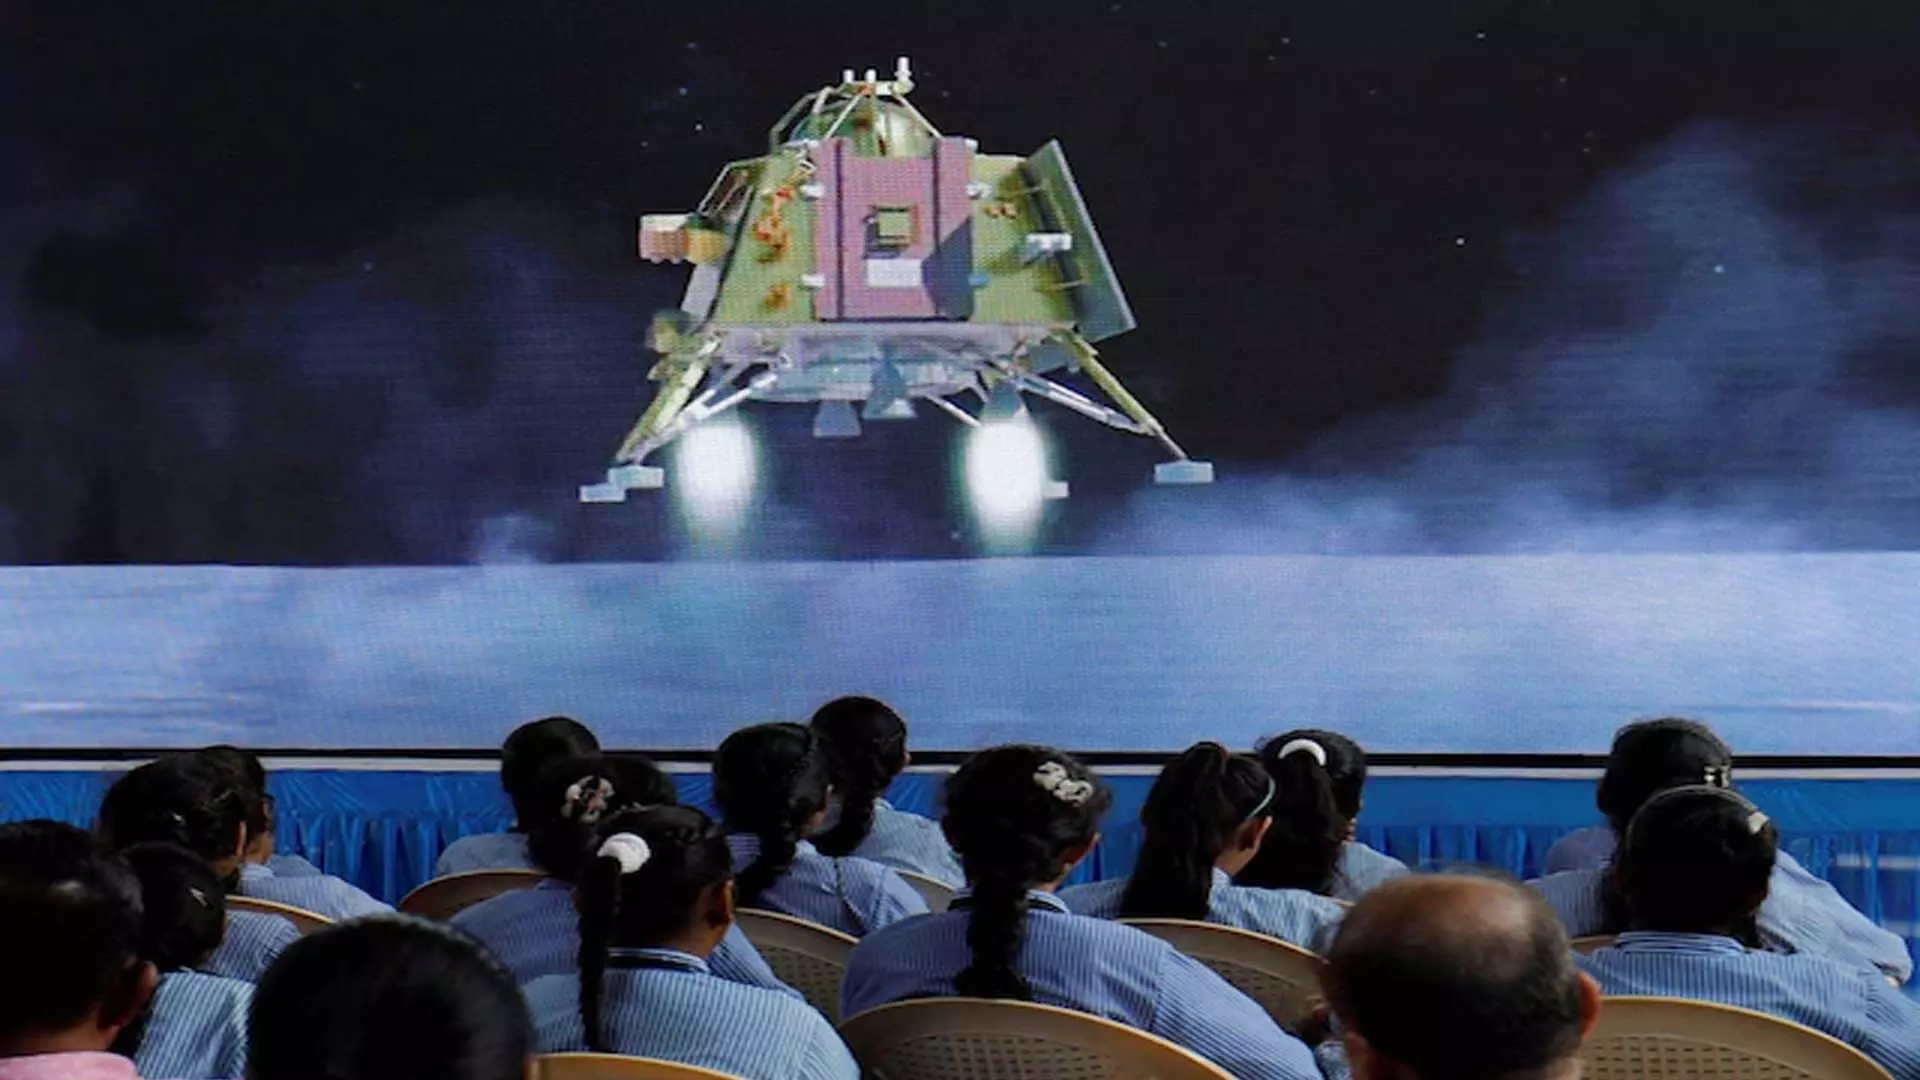 भारत के चंद्रयान-3 मिशन को अमेरिकी अंतरिक्ष अन्वेषण पुरस्कार से सम्मानित किया गया